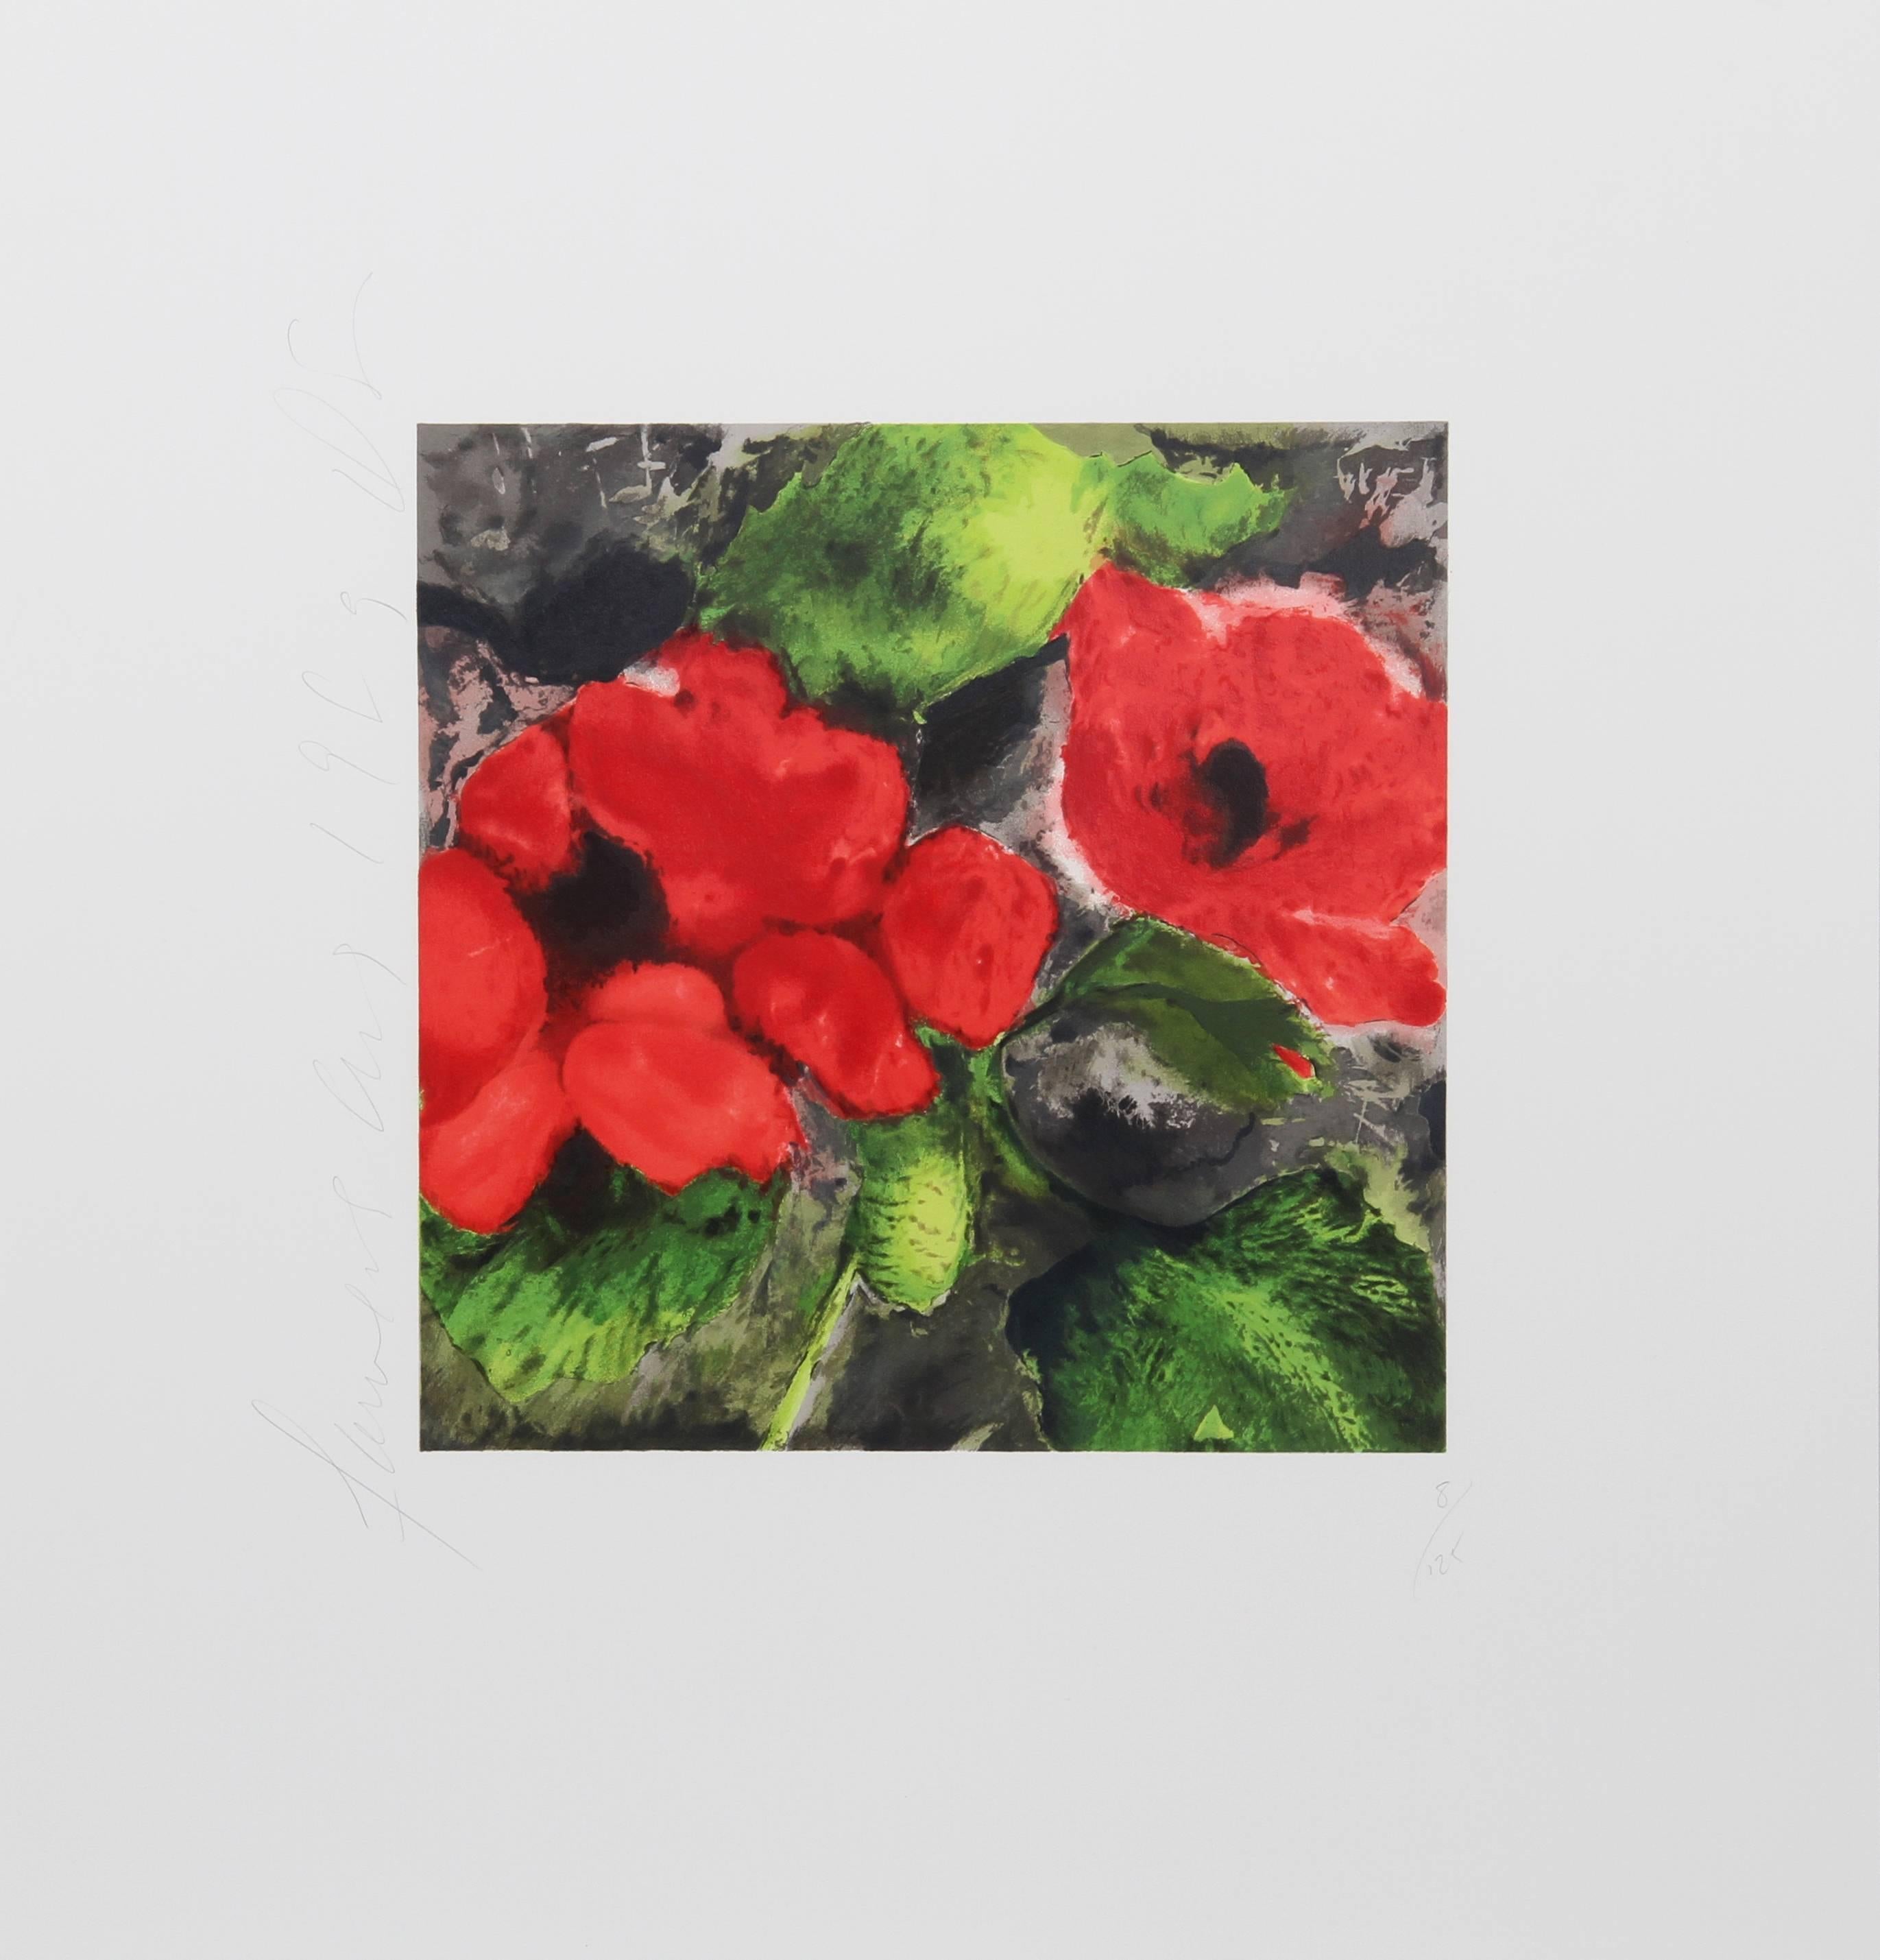 Künstler: Donald Sultan, Amerikaner (1951 - )
Titel: Rote Mohnblumen
Jahr: 1989
Medium: Siebdruck, signiert und nummeriert mit Bleistift
Auflage: 125
Bildgröße: 12 x 12 Zoll
Größe: 23 x 22 Zoll (58,42 x 55,88 cm)